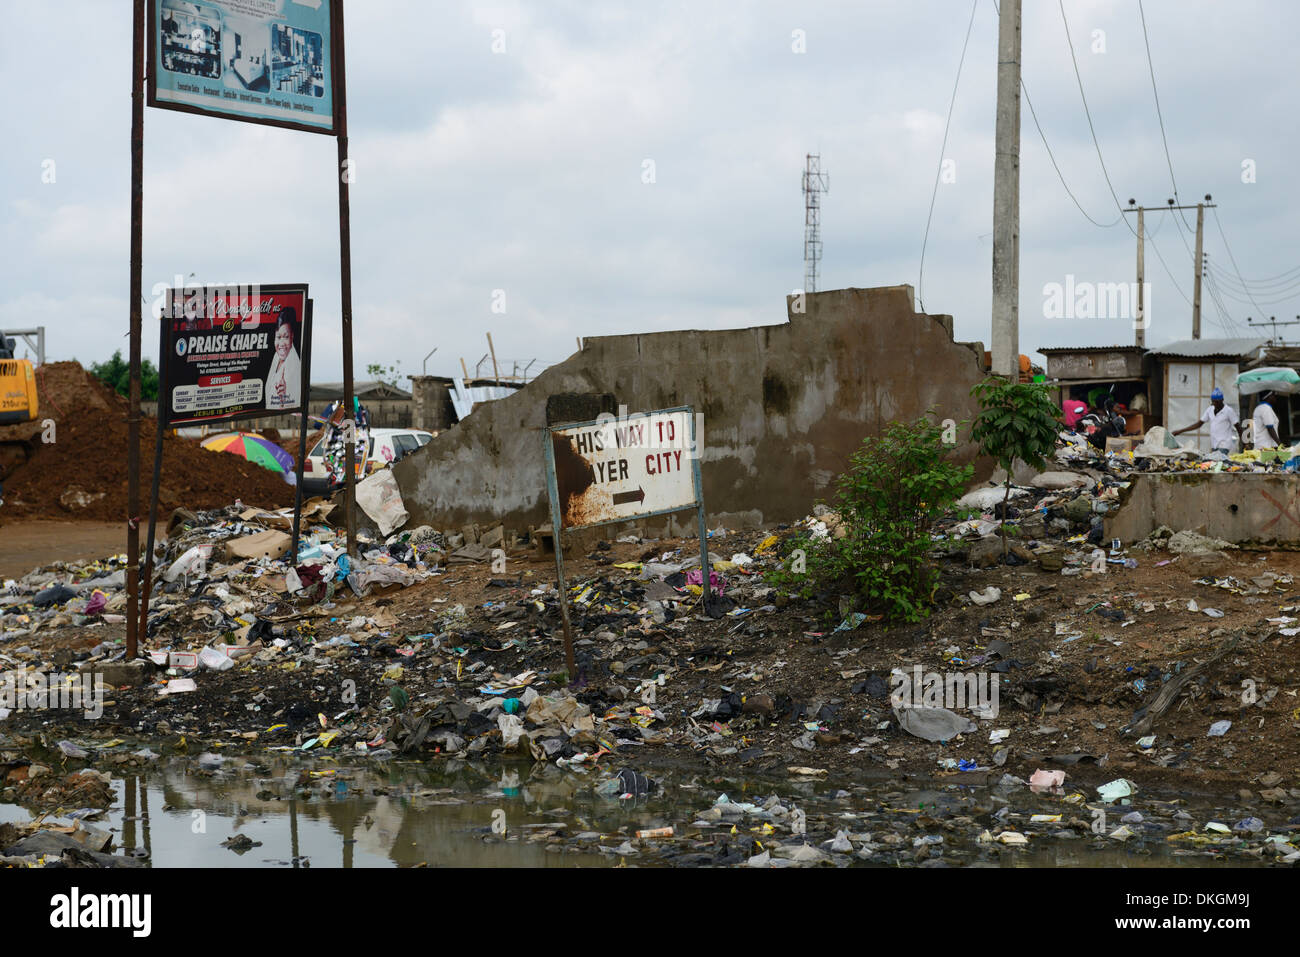 Melden Sie Beschilderung Eingang Unrat übersät Müll Gebet Stadt Ibadan Autobahn Lagos Nigeria slum Slums Stockfoto